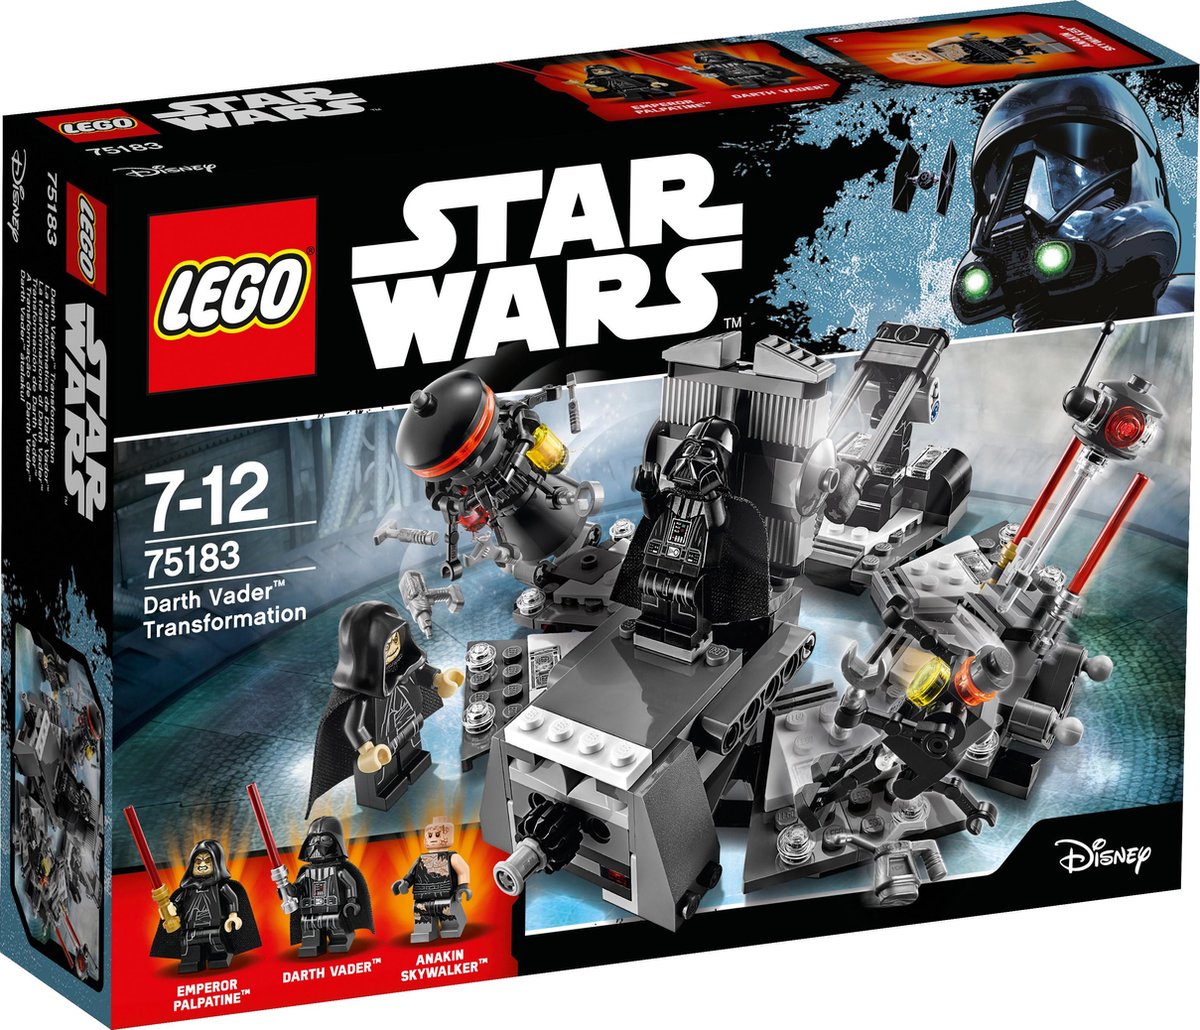 Rode datum oogopslag Het strand LEGO Star Wars Darth Vader Transformatie - 75183 | bol.com